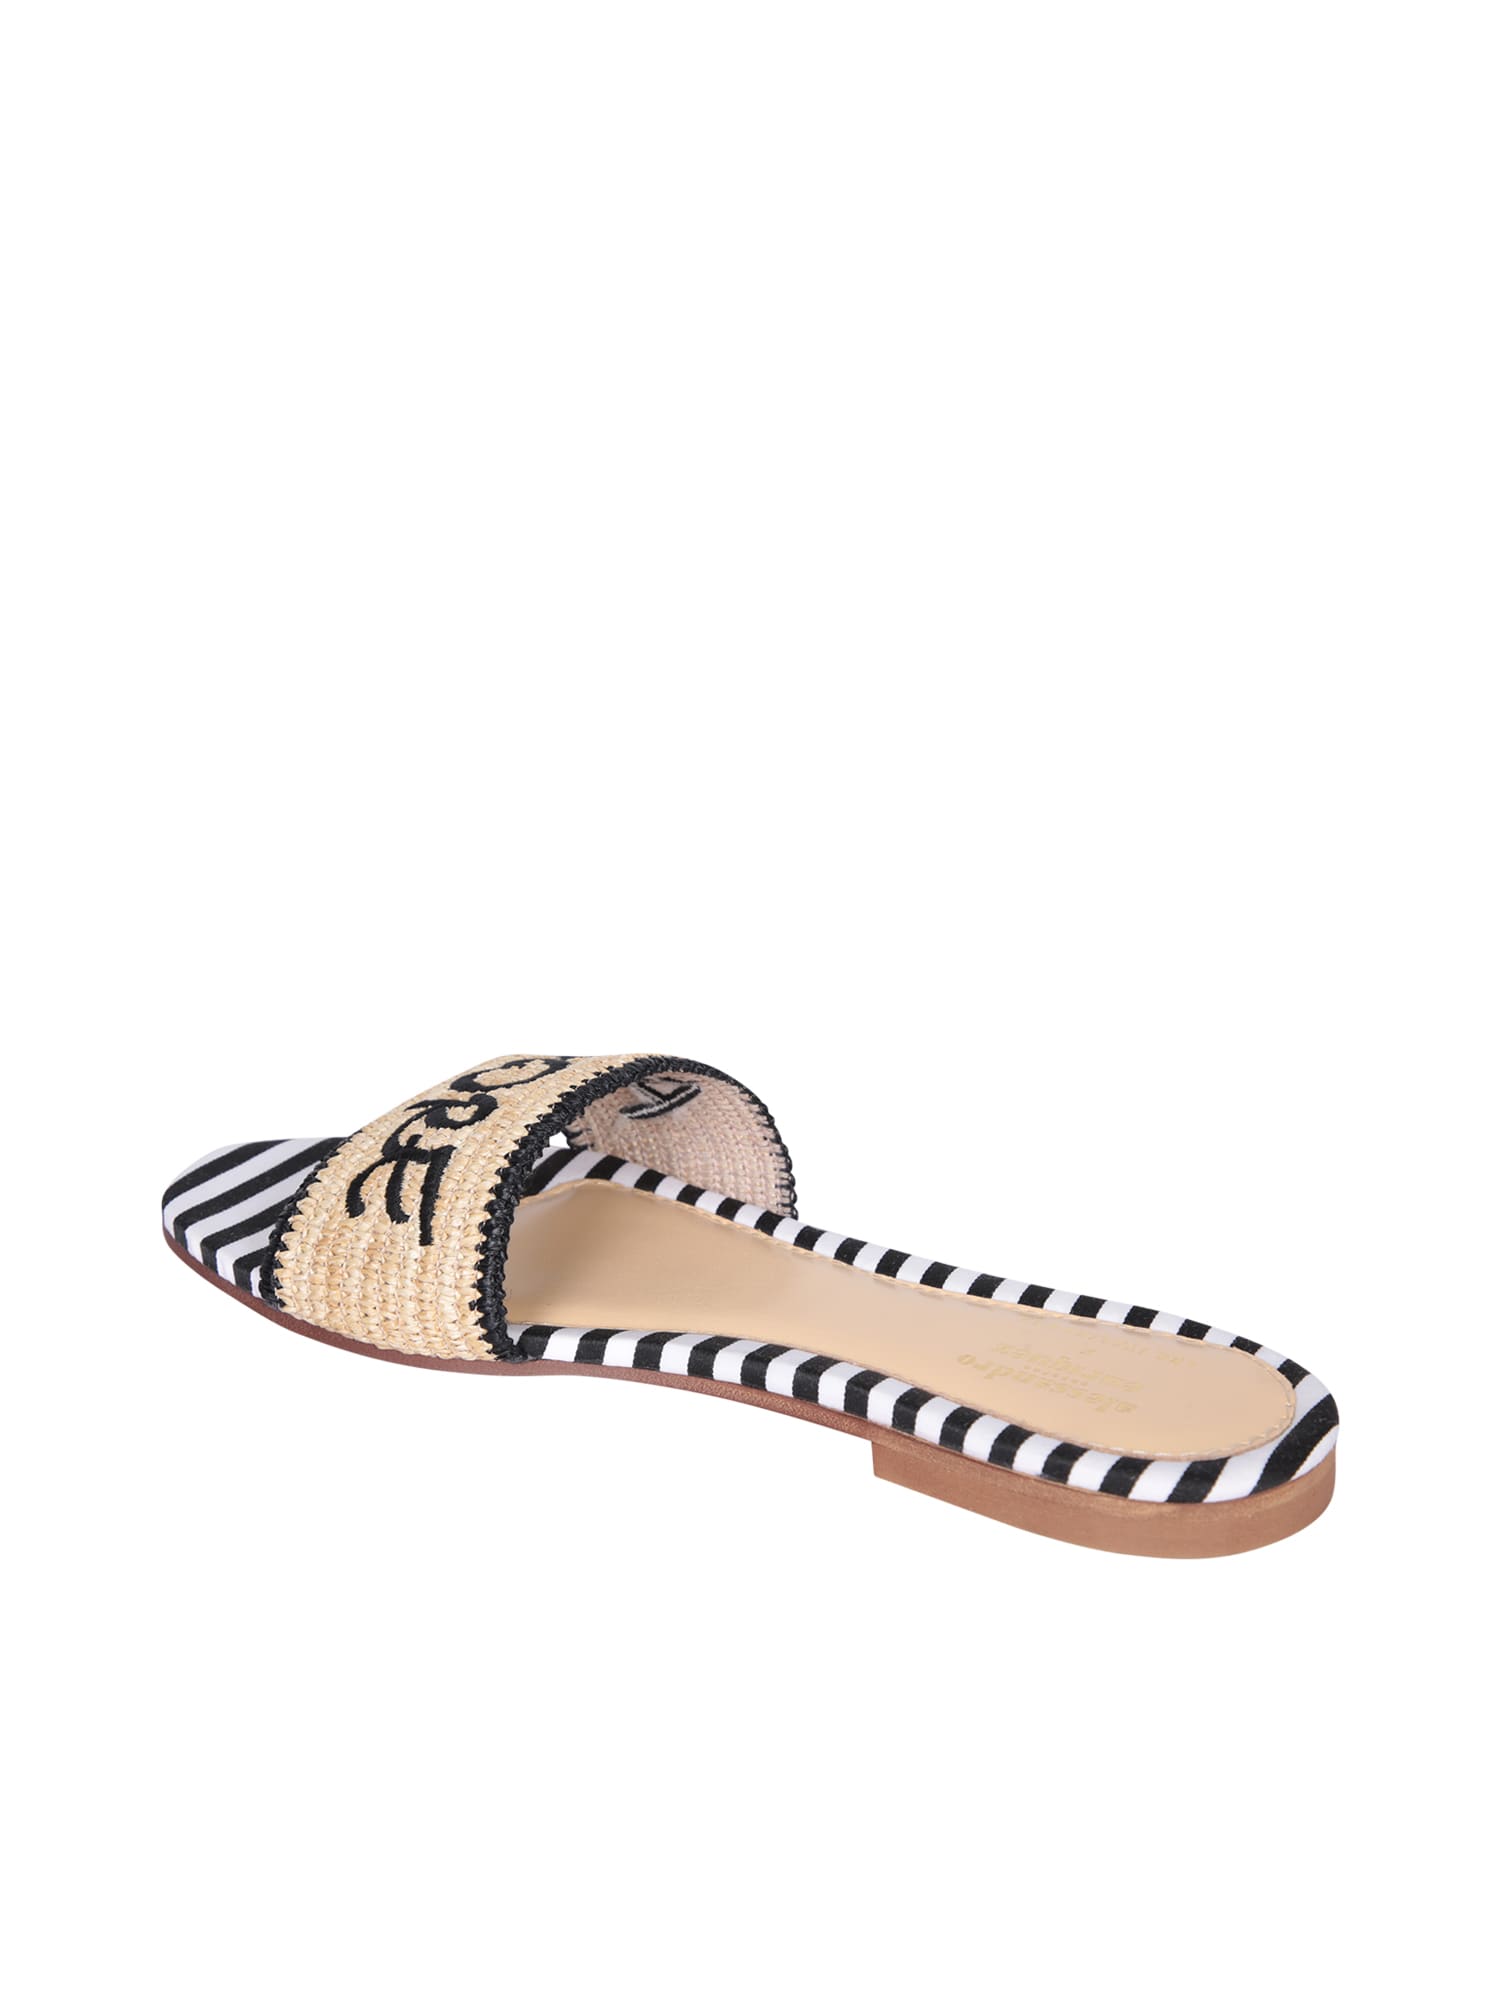 Shop Alessandro Enriquez Amore Beige Nero Sandals